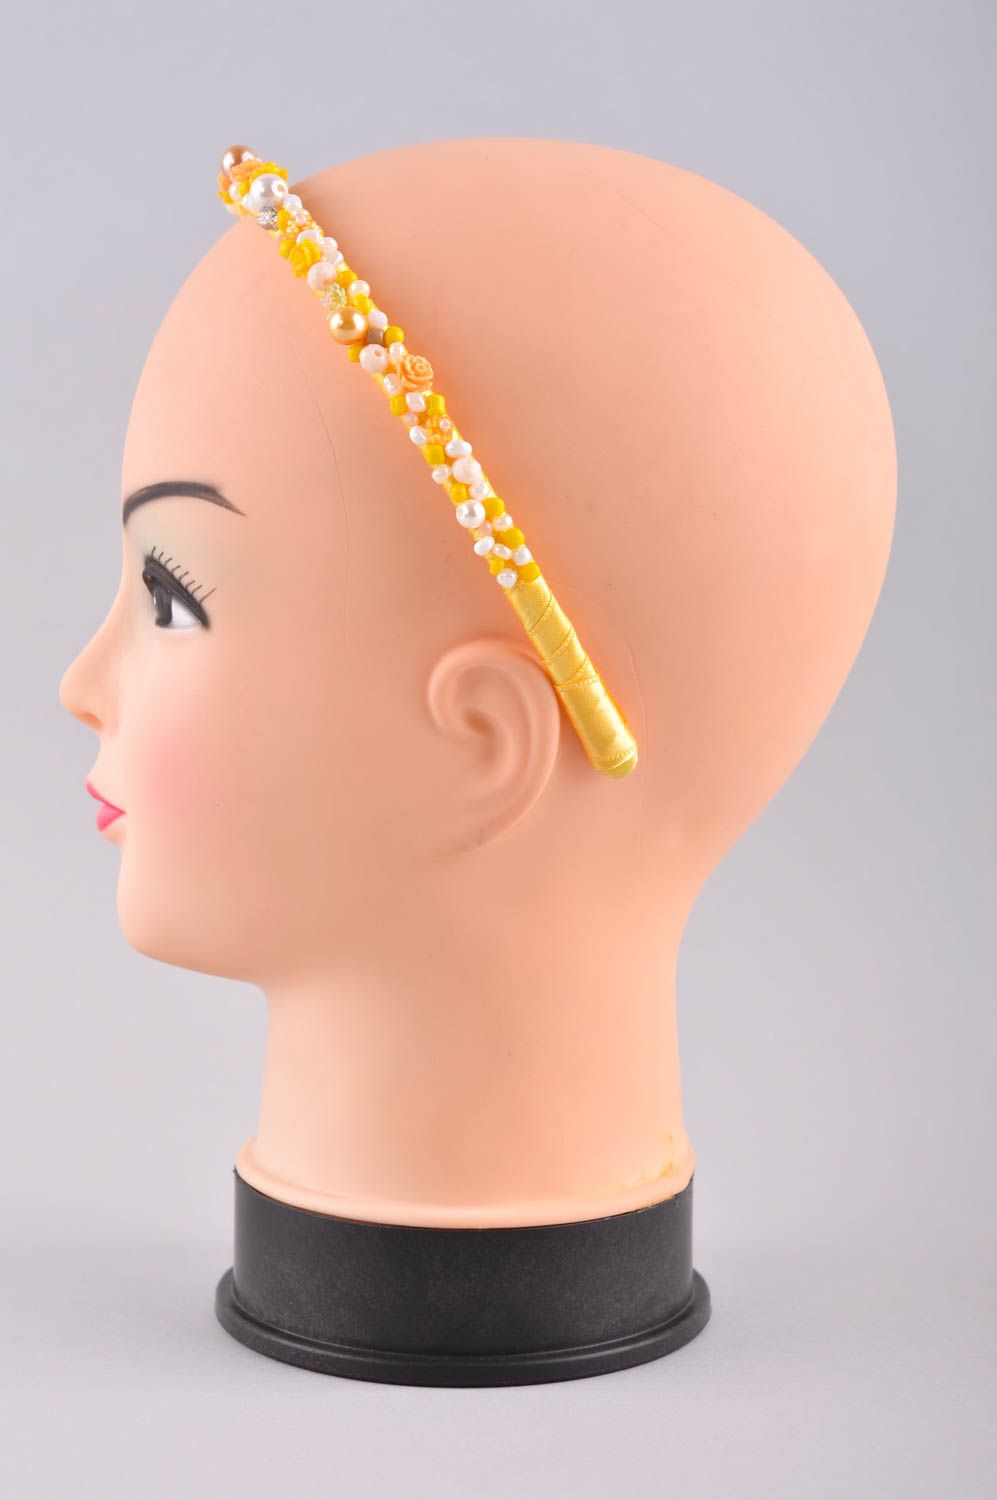 Дизайнерское украшение ручной работы обруч на голову аксессуар для волос фото 3